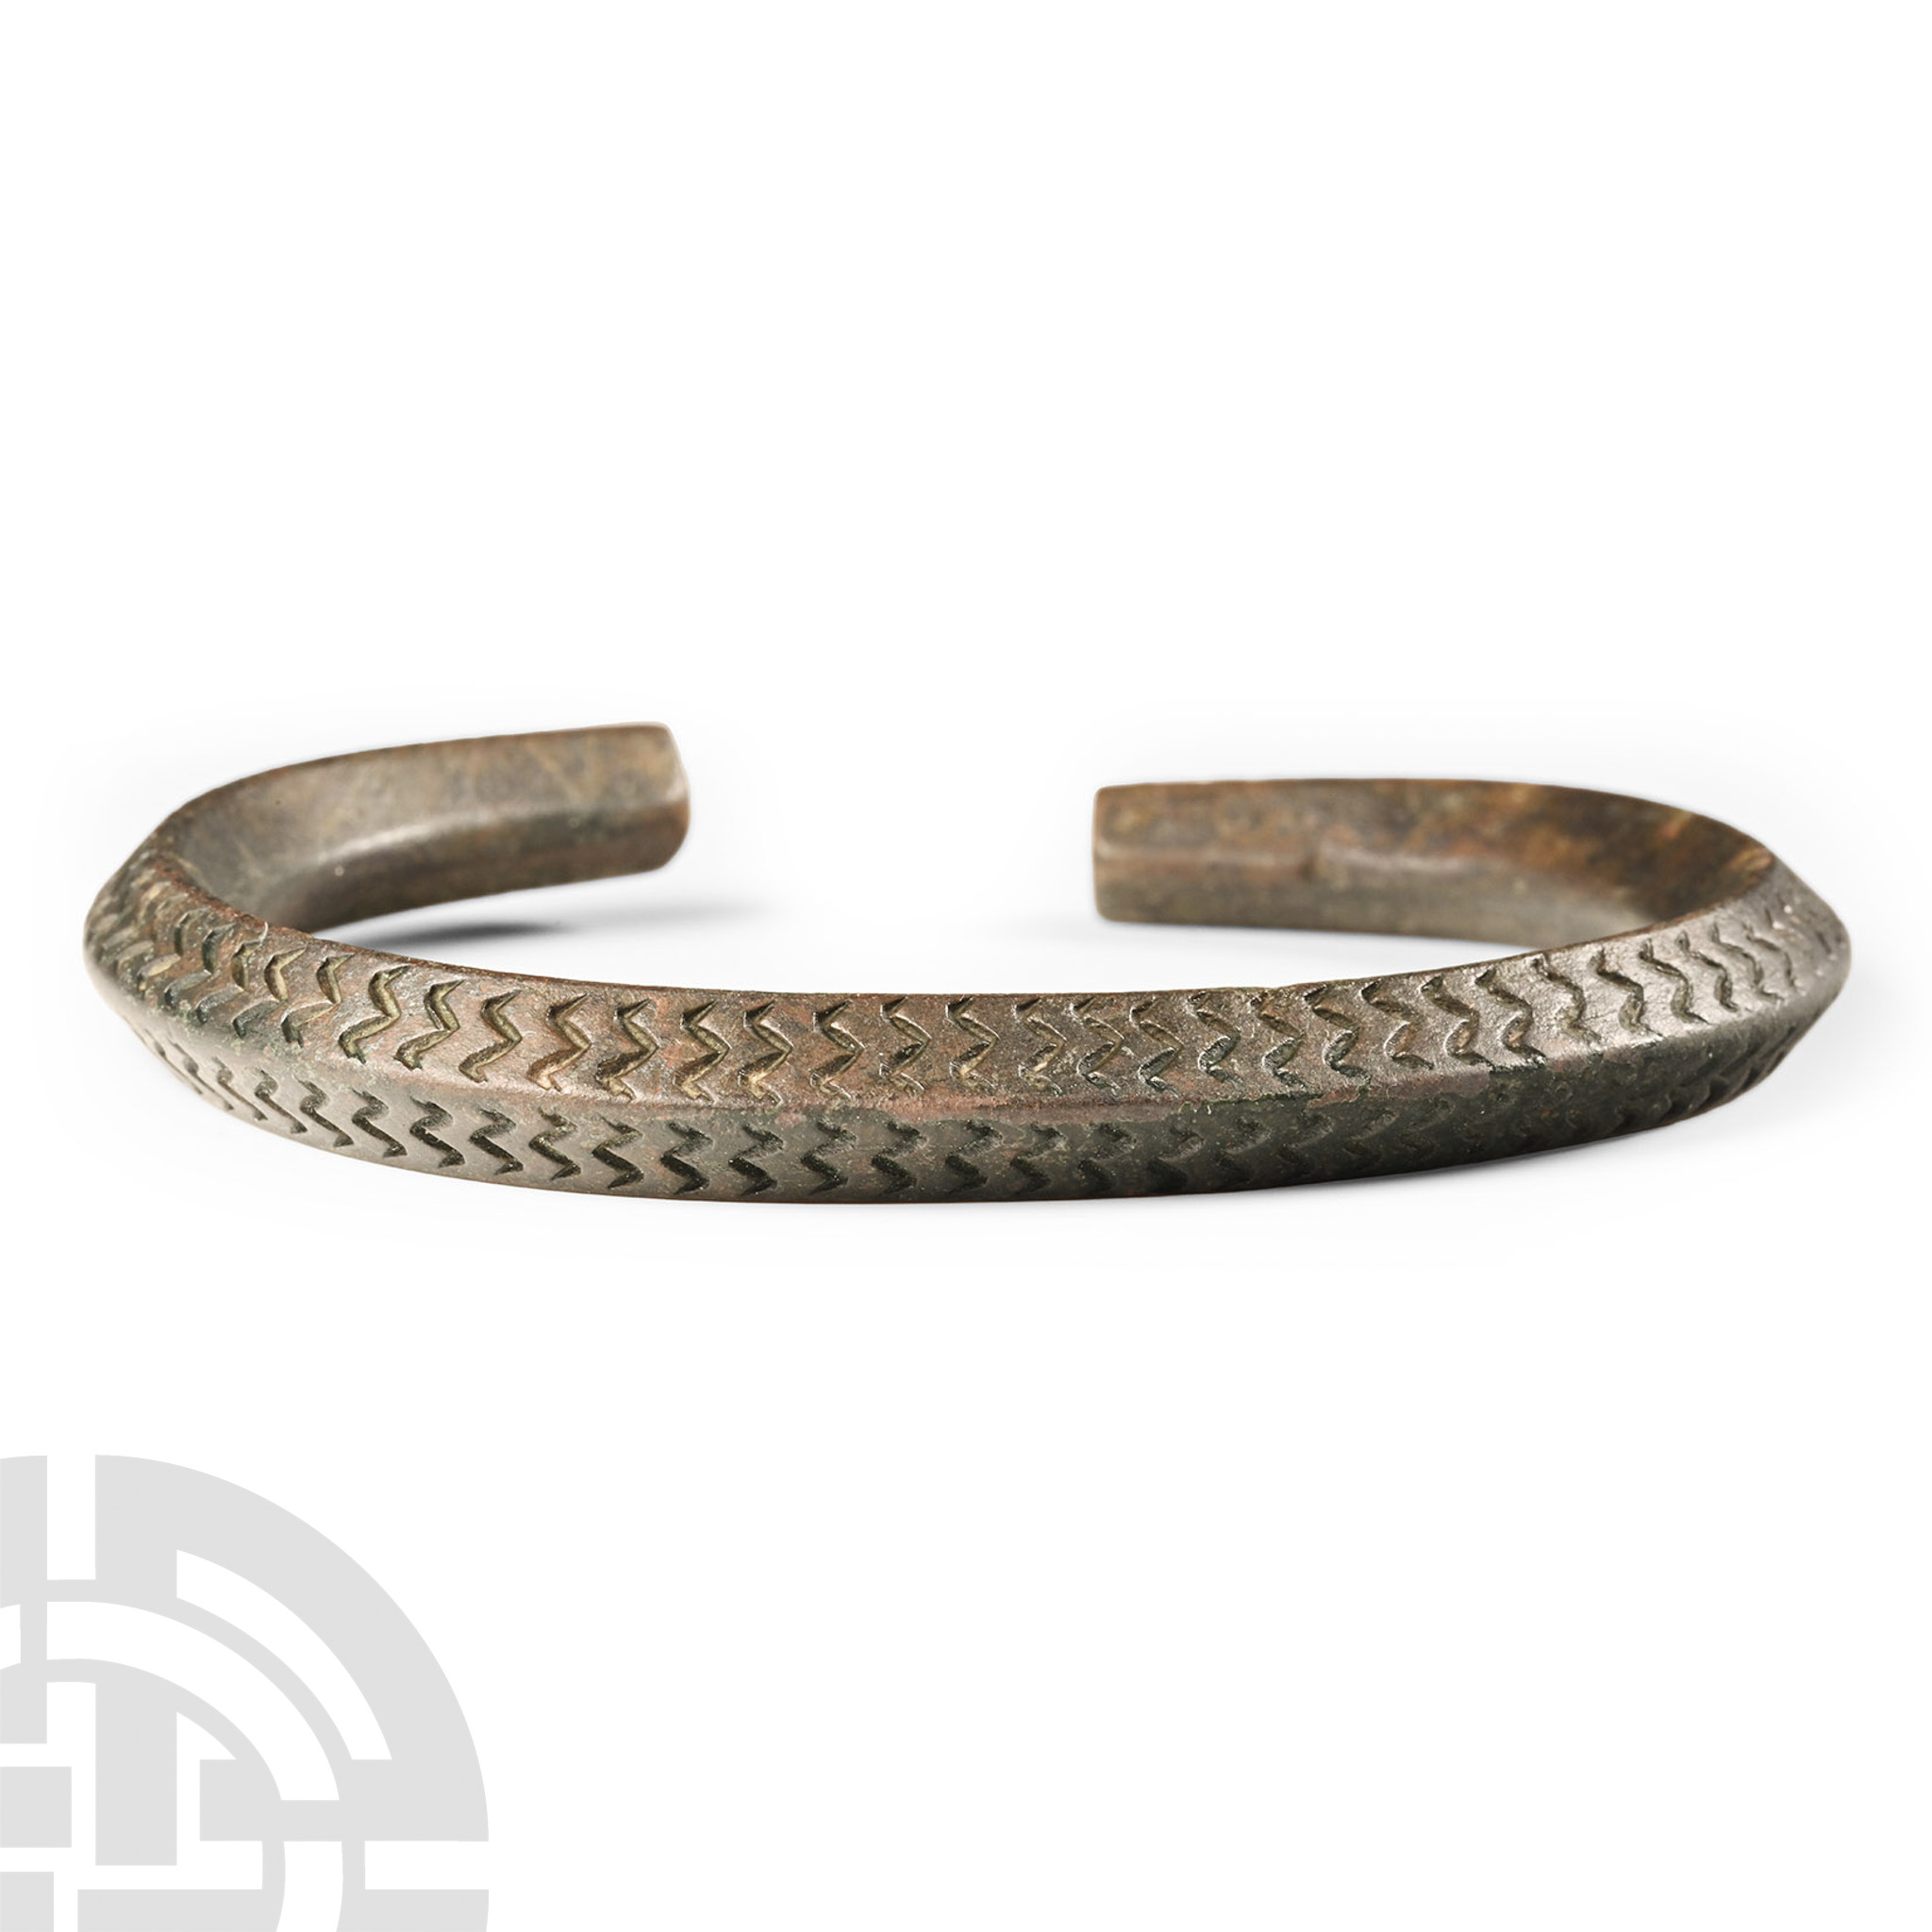 Viking Age Bronze Decorated Bracelet